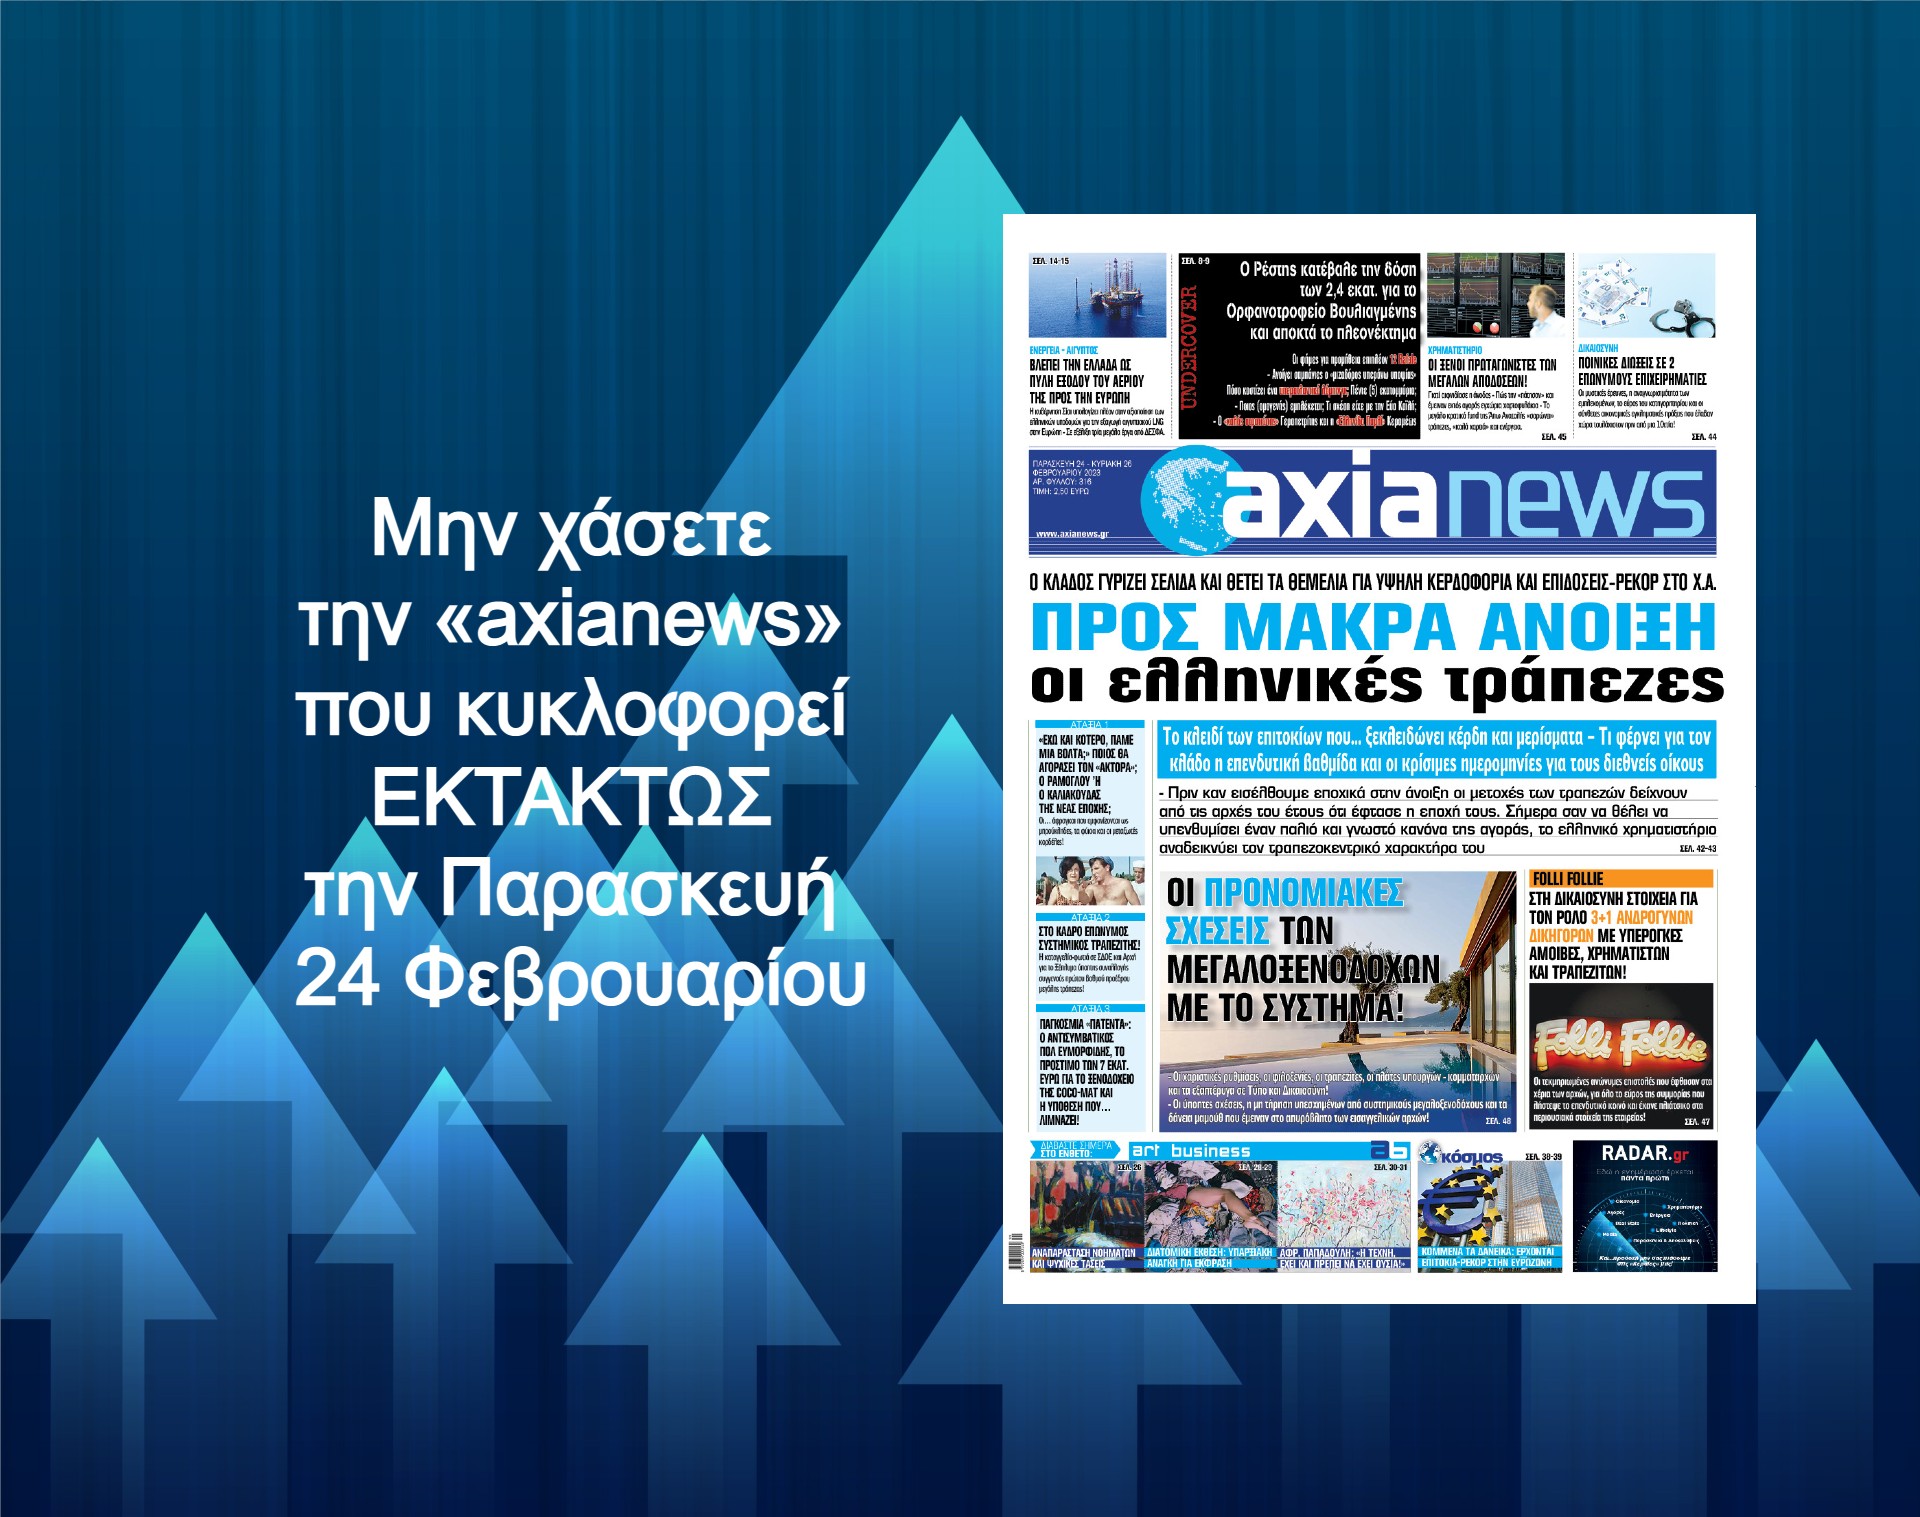 Προς μακρά άνοιξη οι ελληνικές τράπεζες: Διαβάστε μόνο στην «axianews» του Σαββάτου!